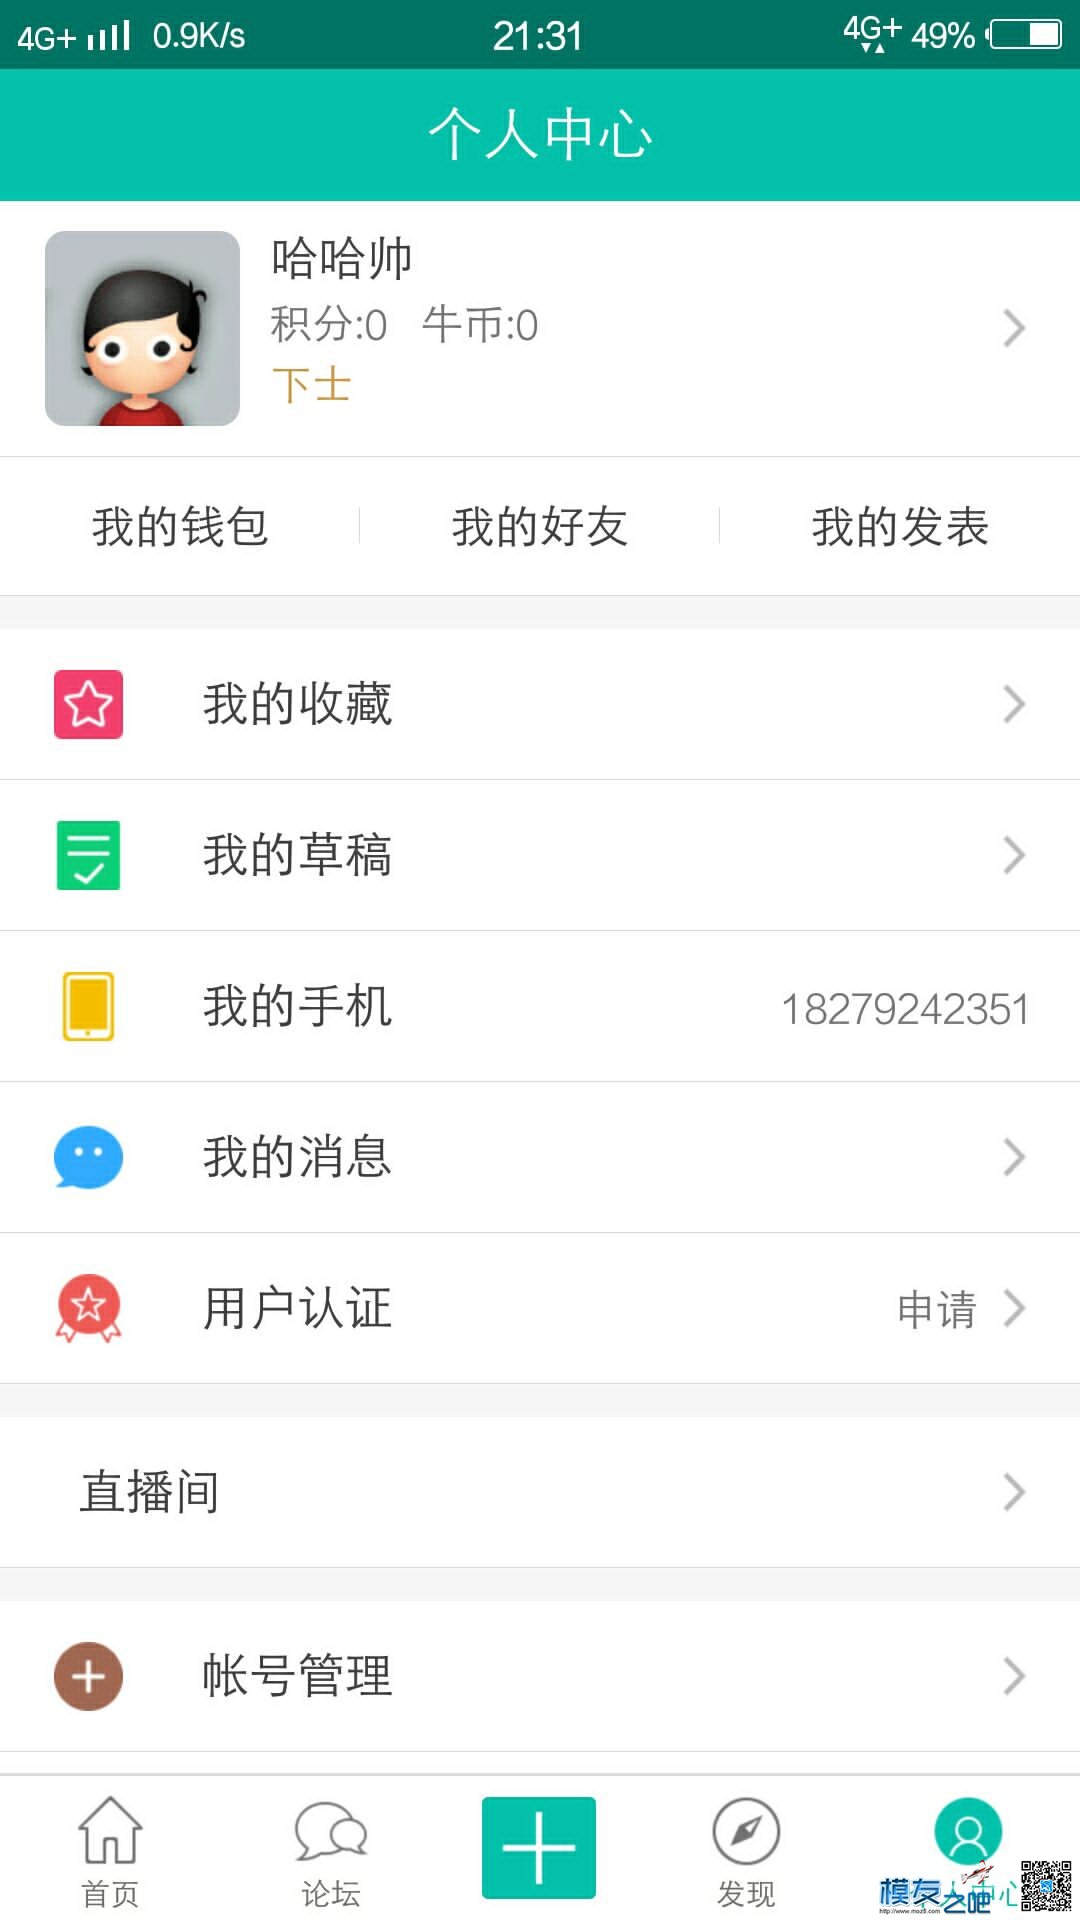 【模友之吧】100个aomway5.8G-500mw图传用于论坛推广！  作者:zhangyiyun2014 2826 